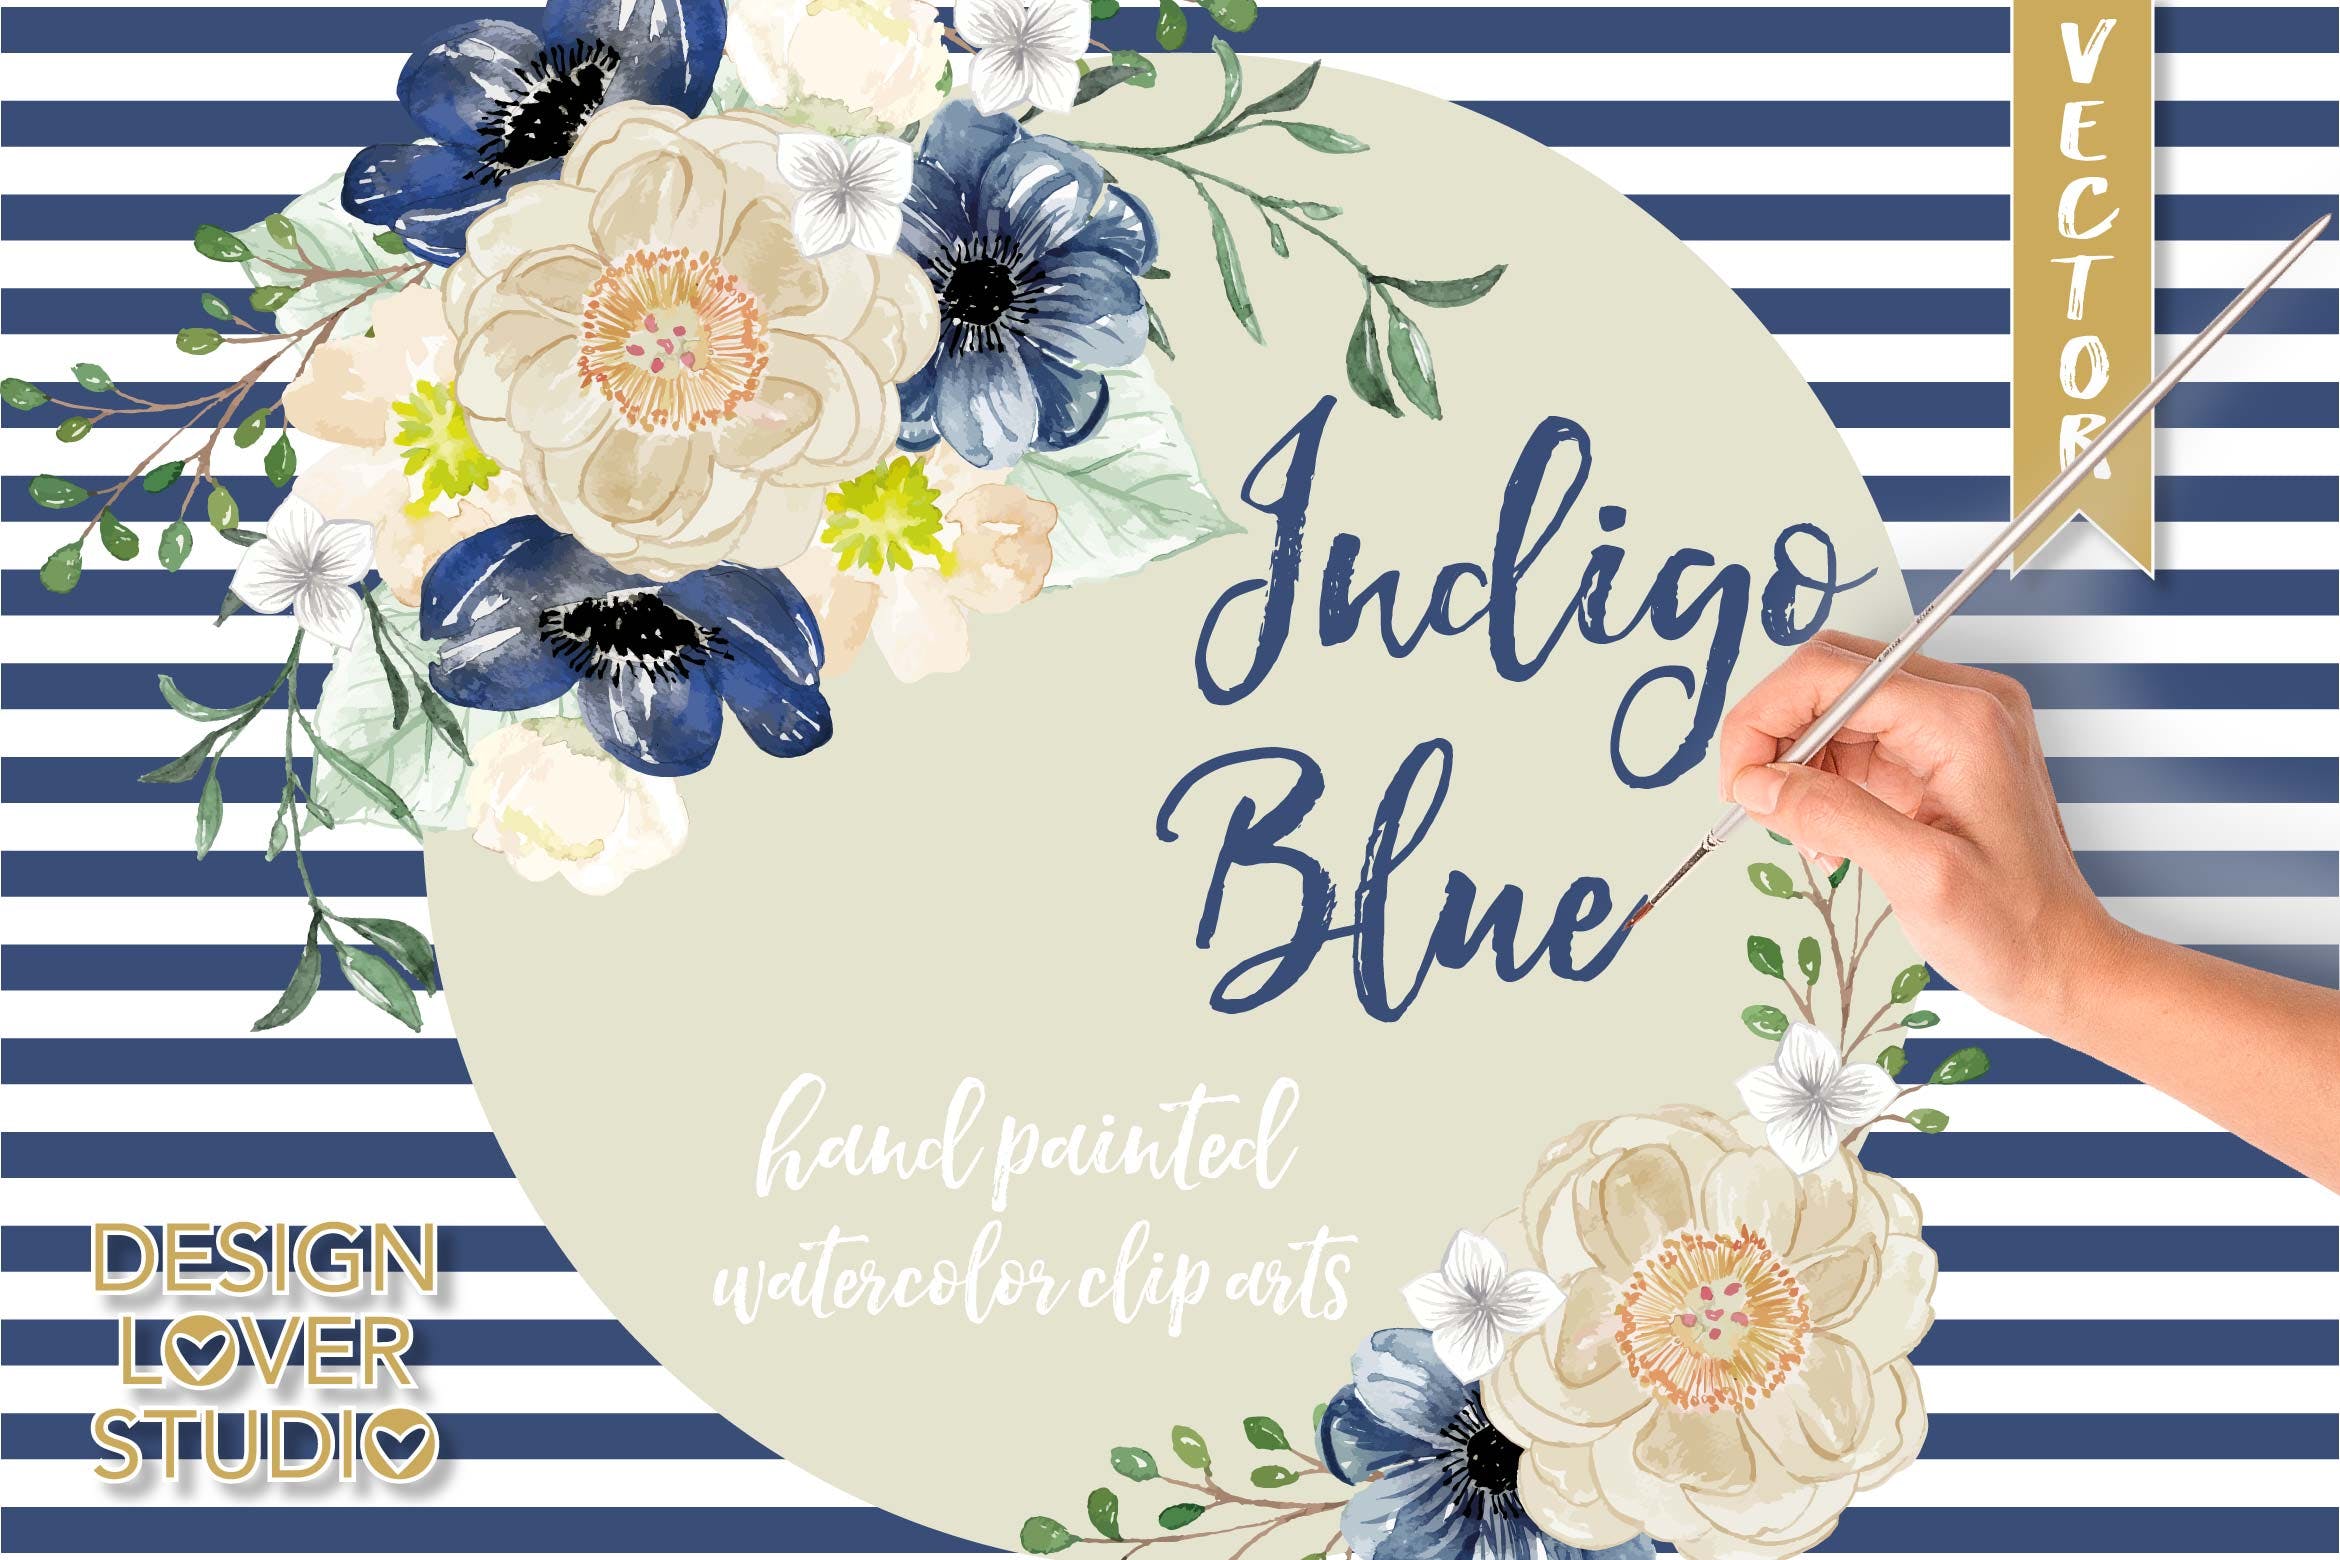 深蓝色系花卉图案重复排列组合素材Watercolor Indigo Blue floral clip arts